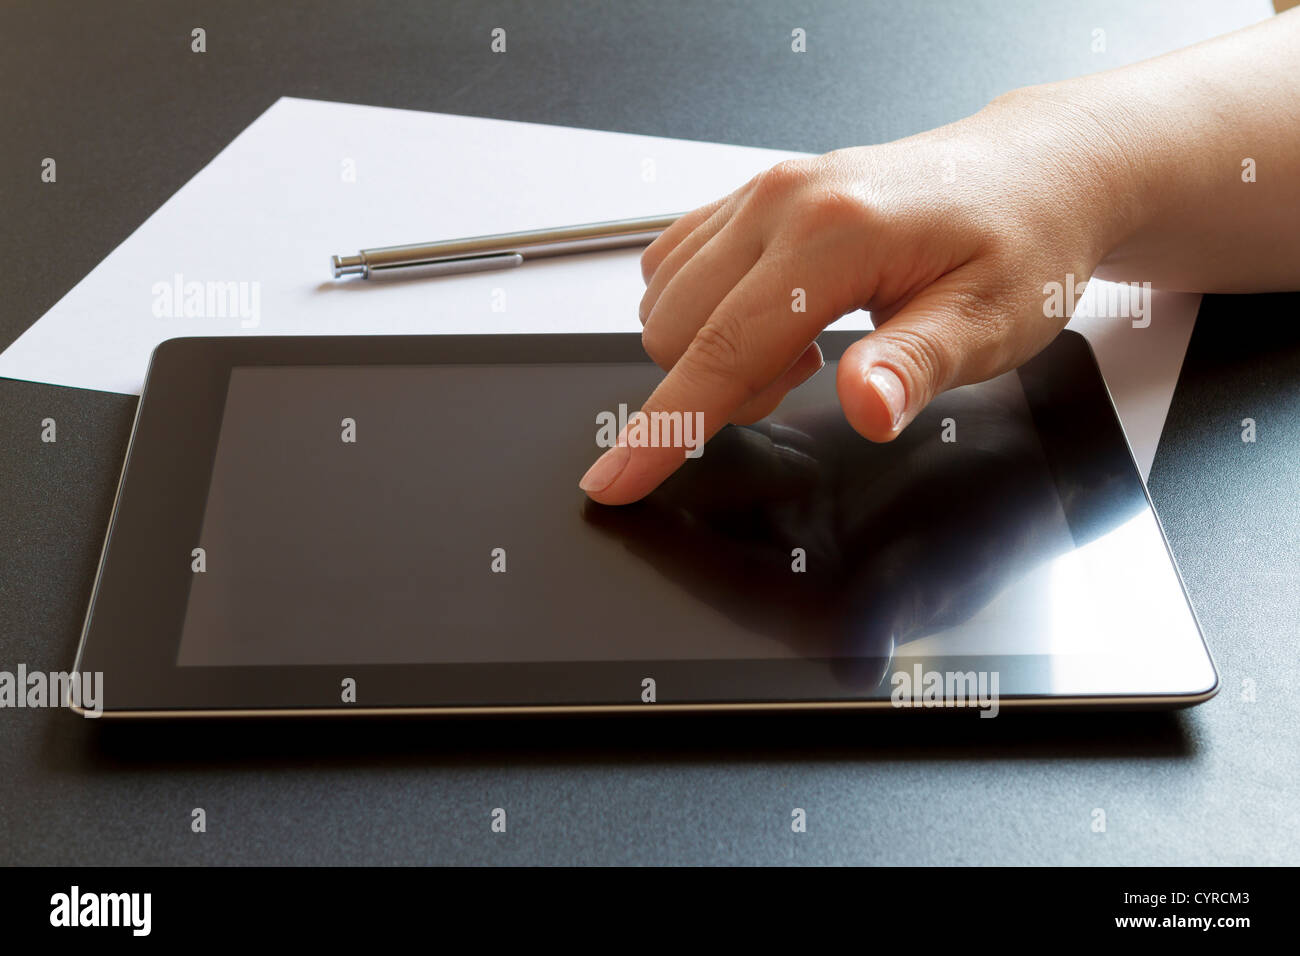 Femme part de la saisie sur écran tactile de tablette numérique Banque D'Images